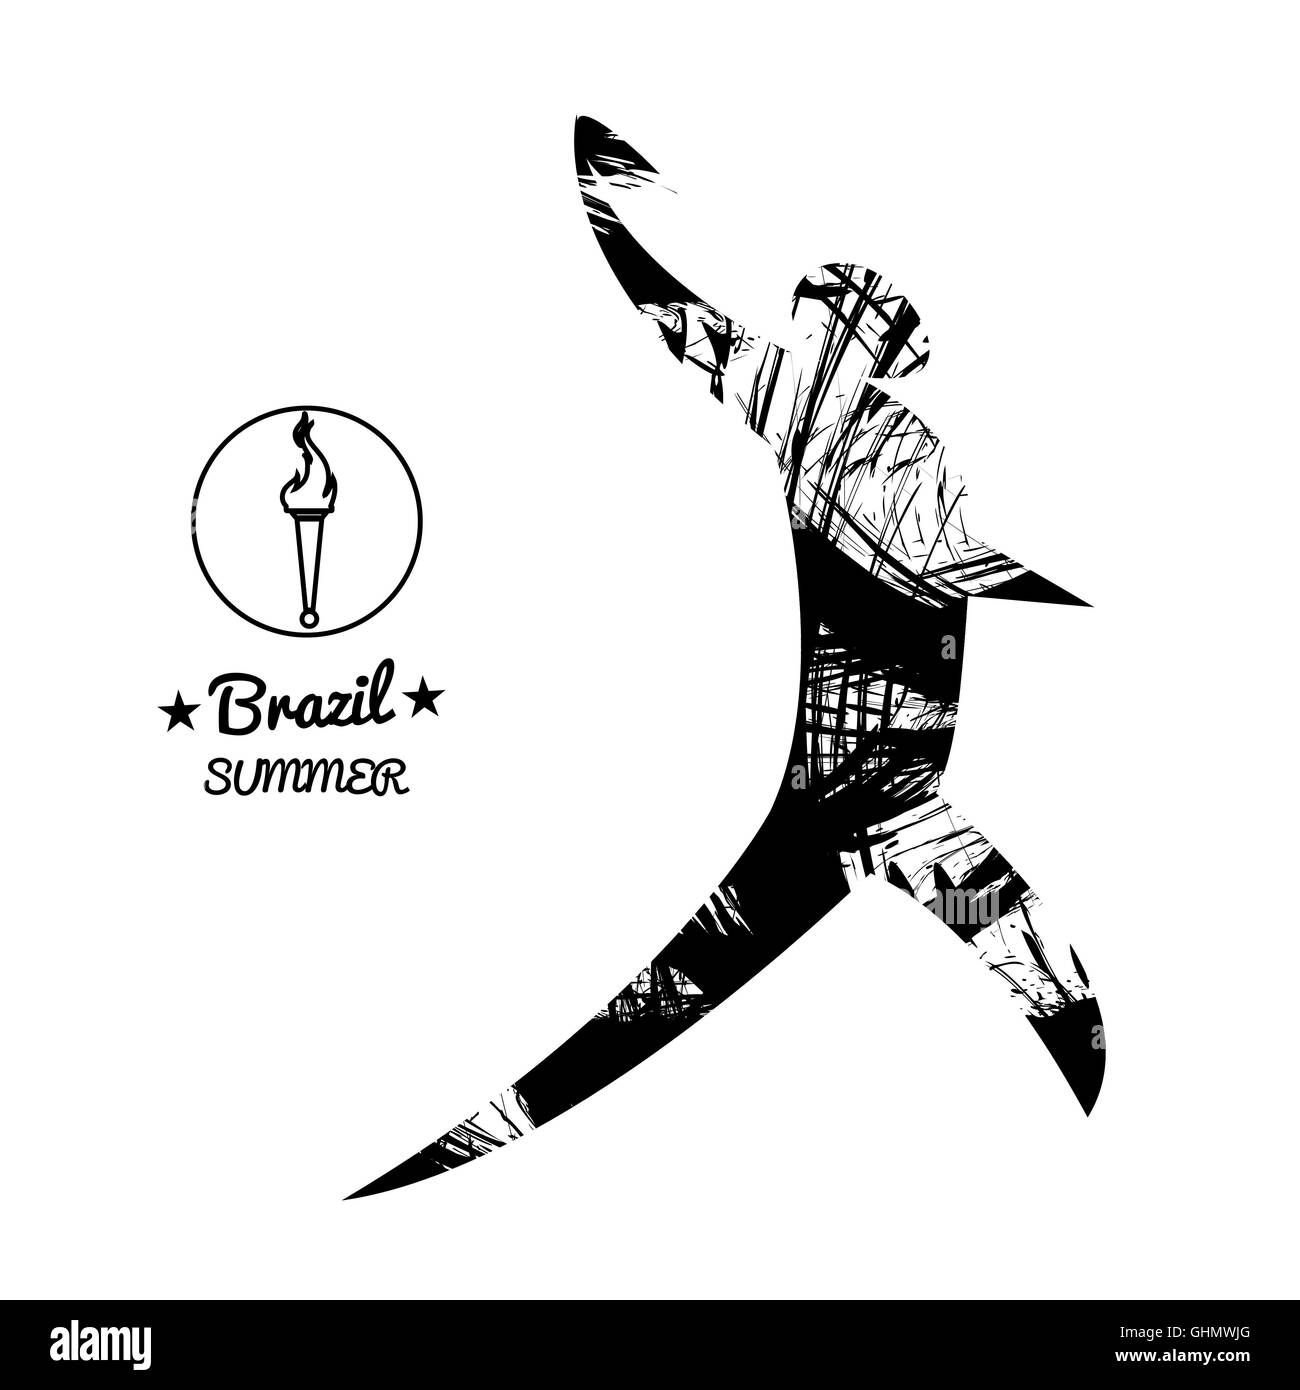 Brasilien-Sommer-Sport-Karte mit einer abstrakten Diskuswerfer im schwarzen Konturen. Digitale Vektor-Bild Stockfoto